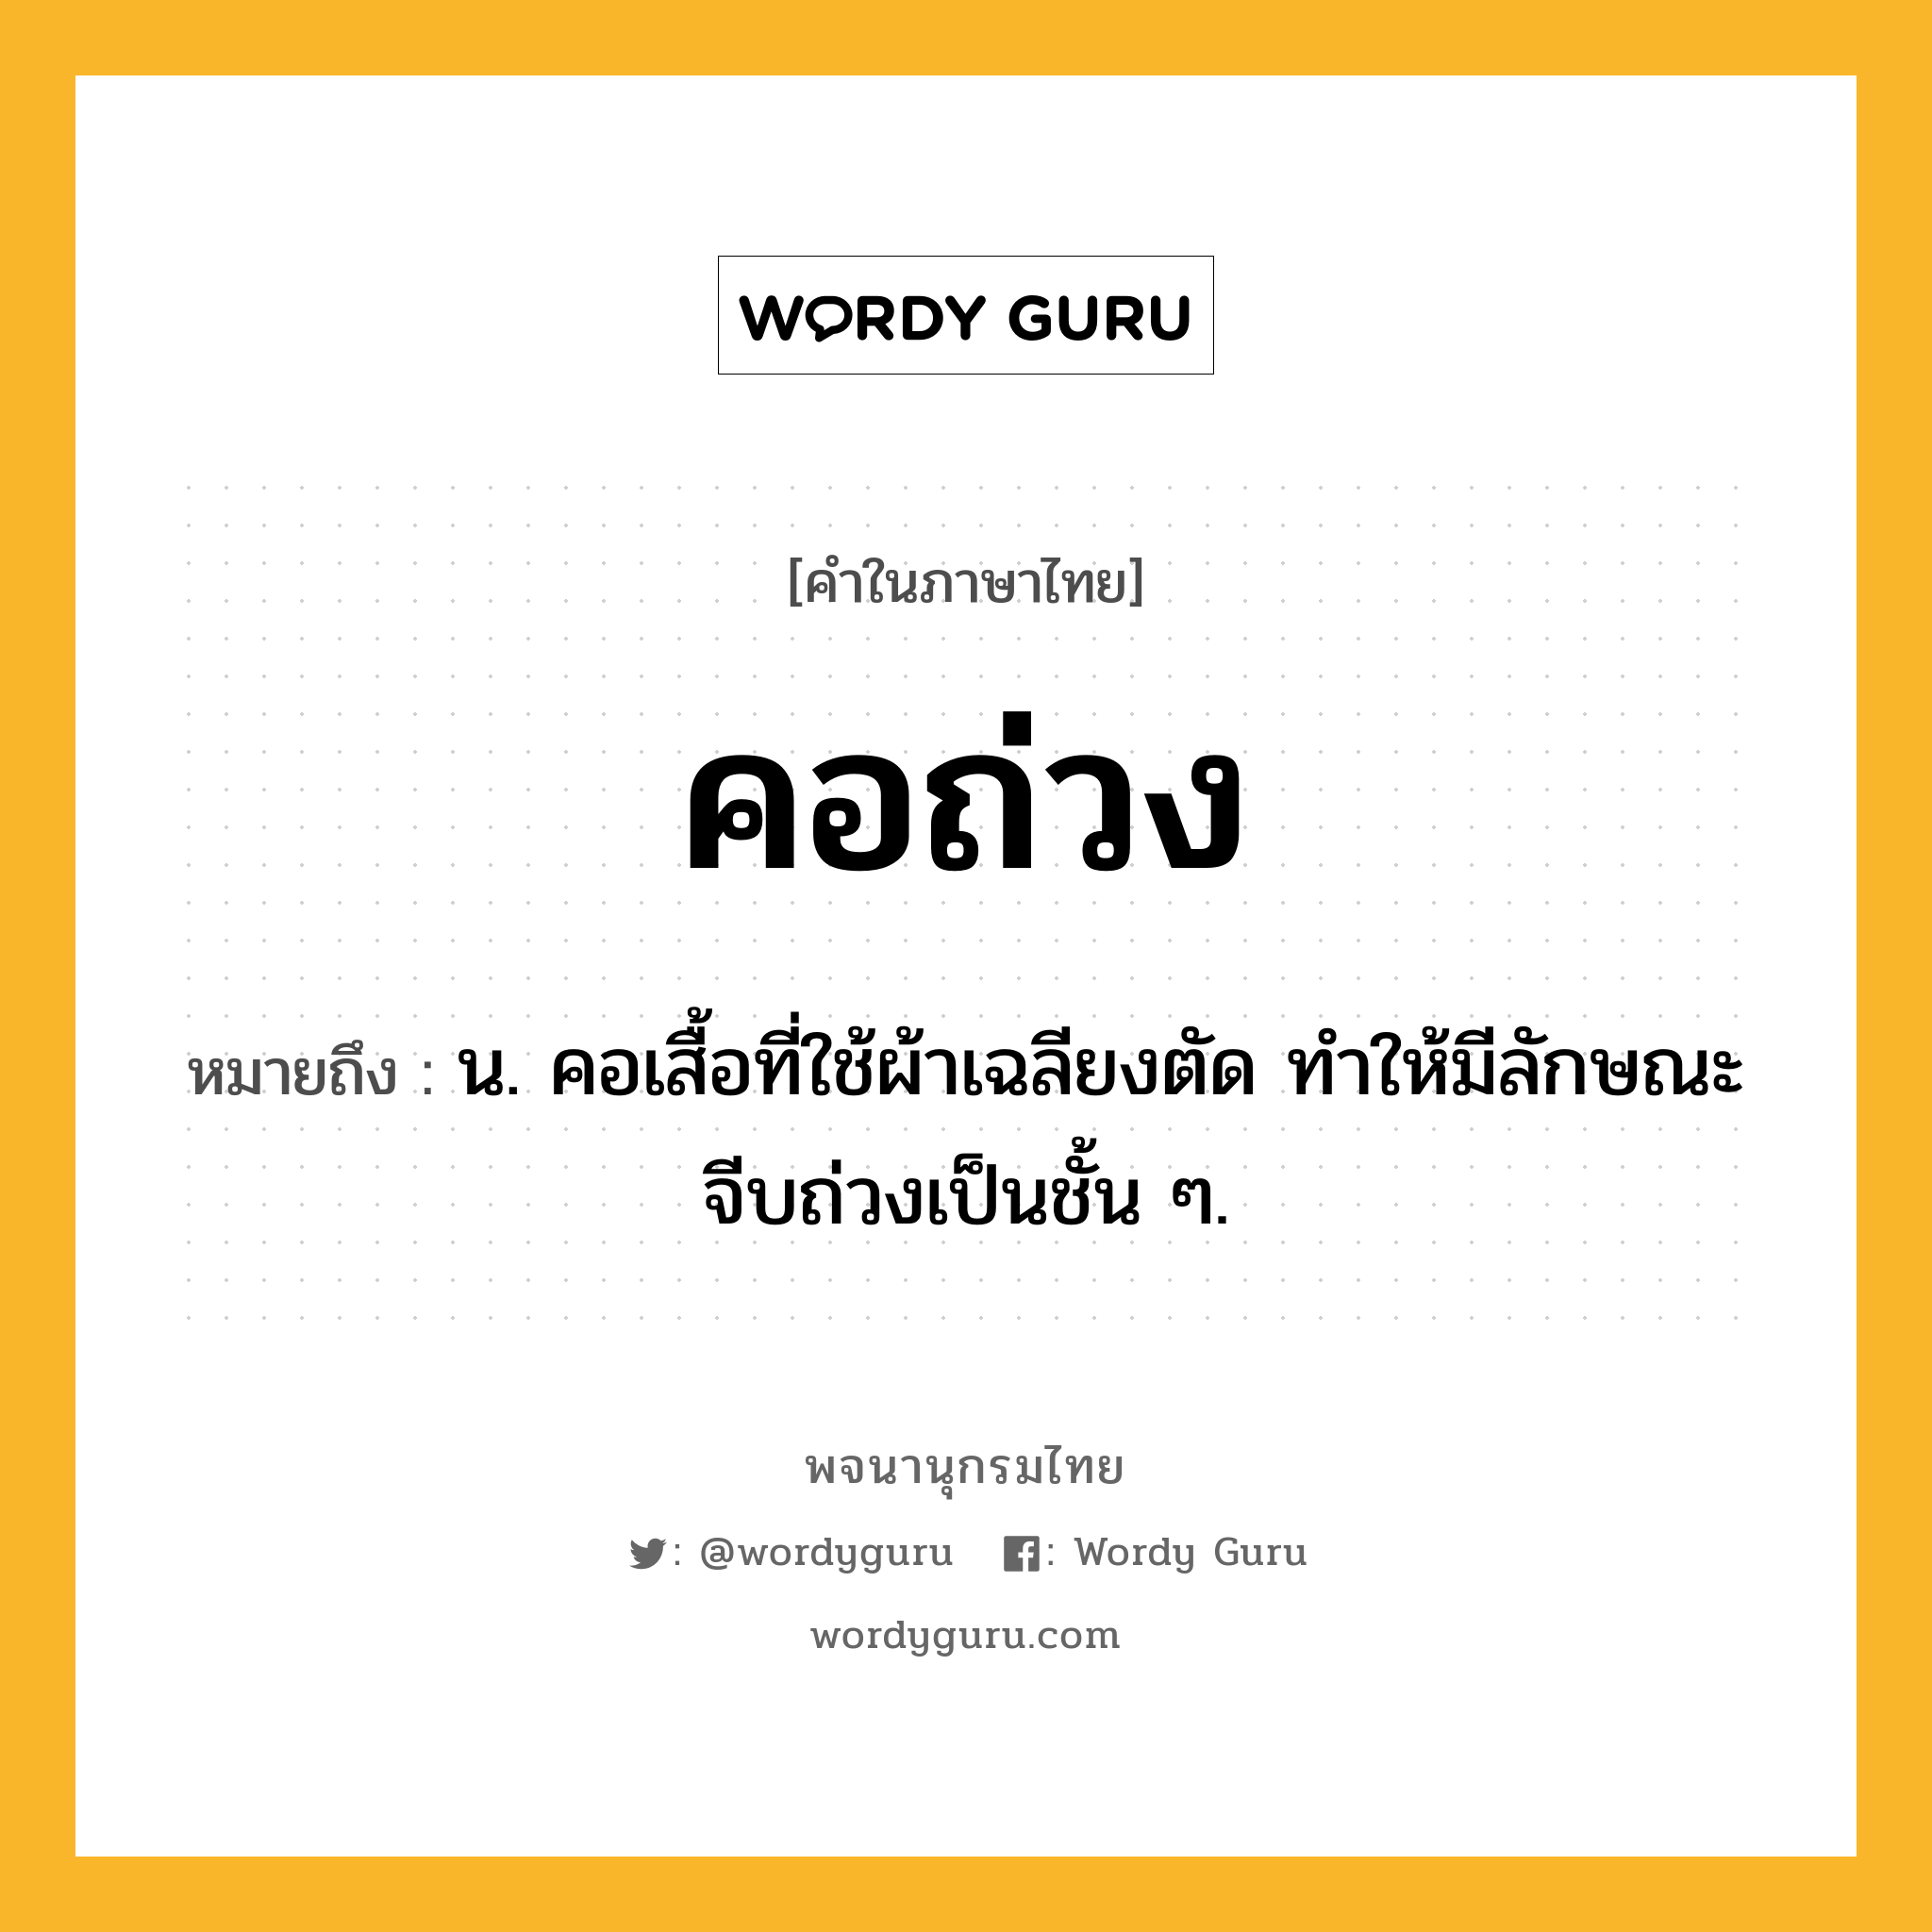 คอถ่วง ความหมาย หมายถึงอะไร?, คำในภาษาไทย คอถ่วง หมายถึง น. คอเสื้อที่ใช้ผ้าเฉลียงตัด ทําให้มีลักษณะจีบถ่วงเป็นชั้น ๆ.